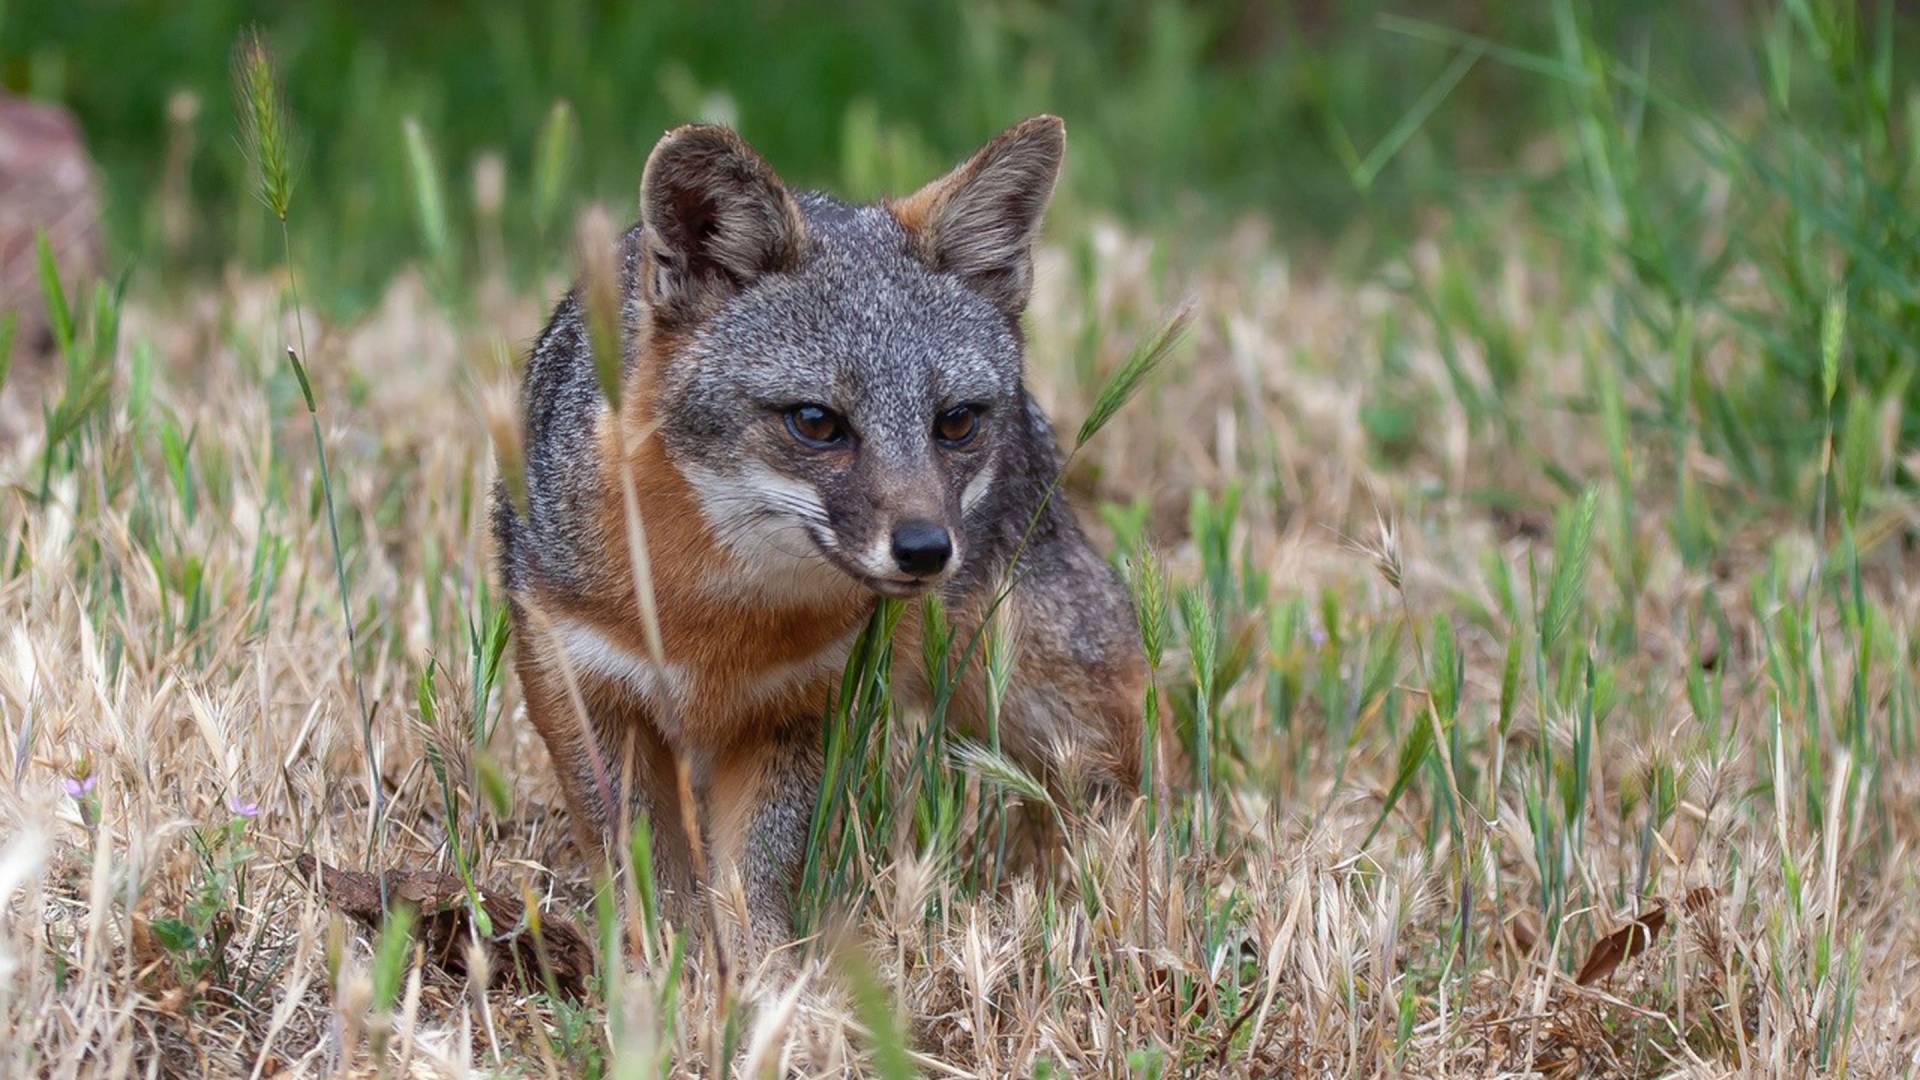 A fox standing among grass